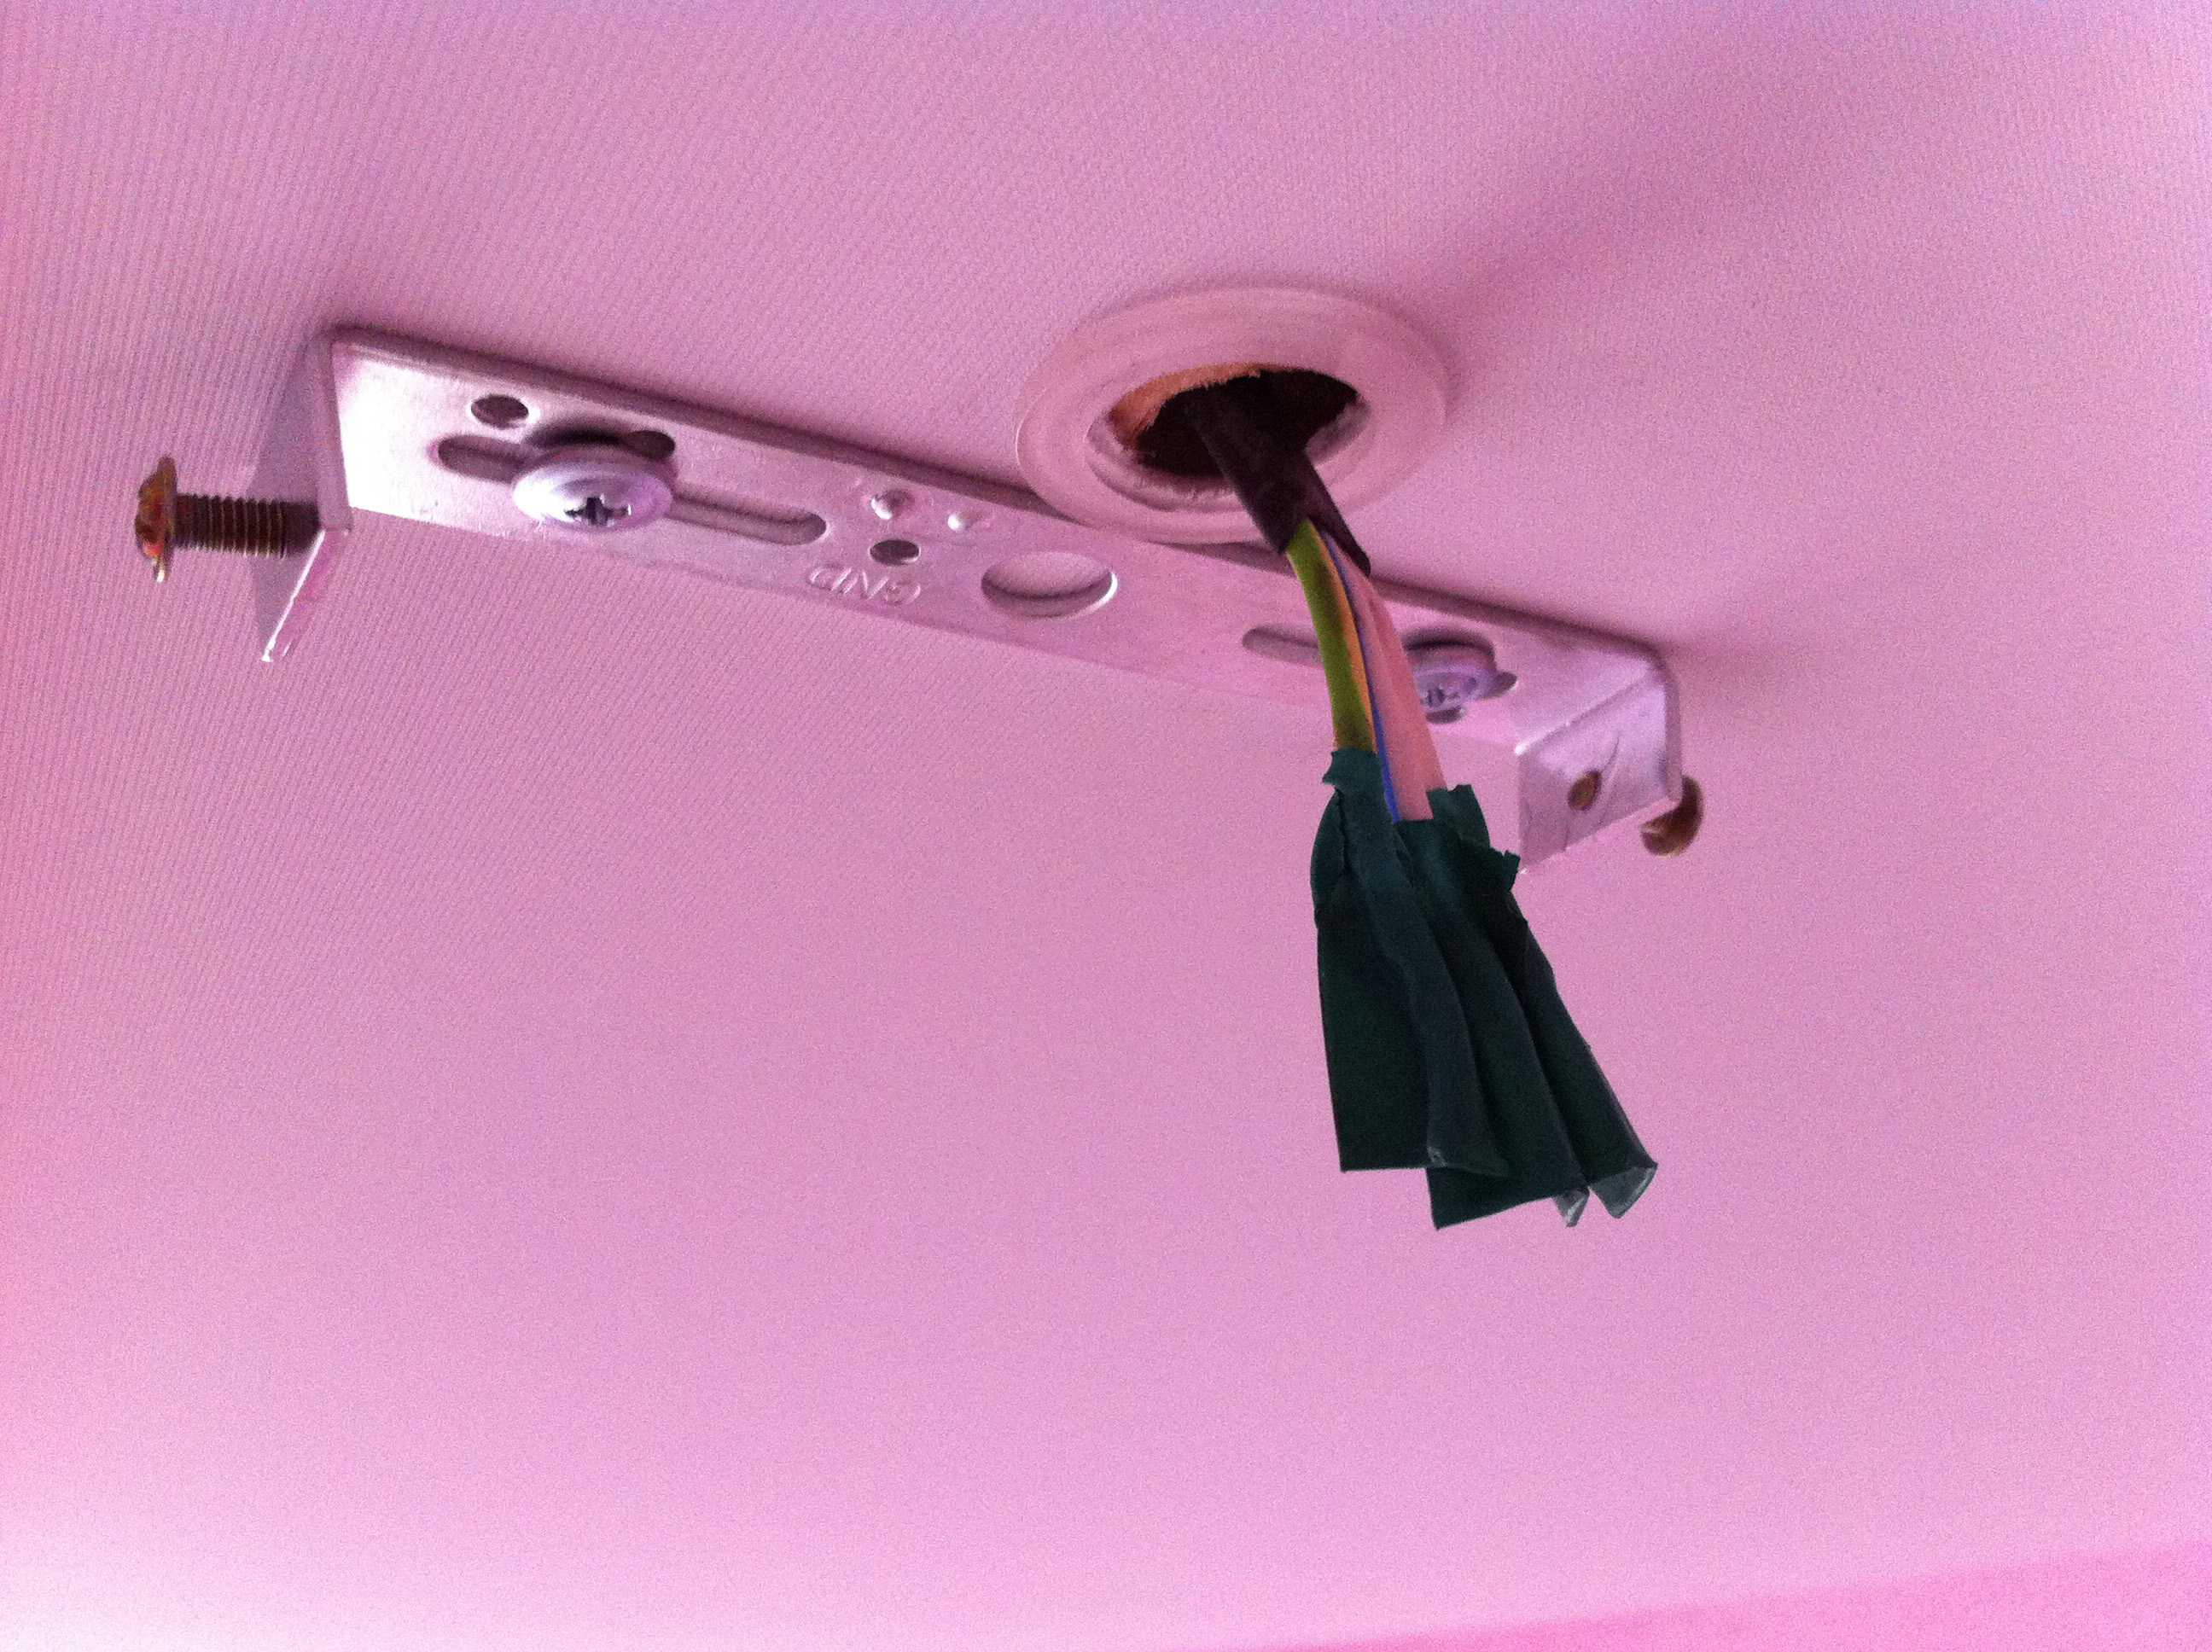 Как установить светильник в натяжной потолок?